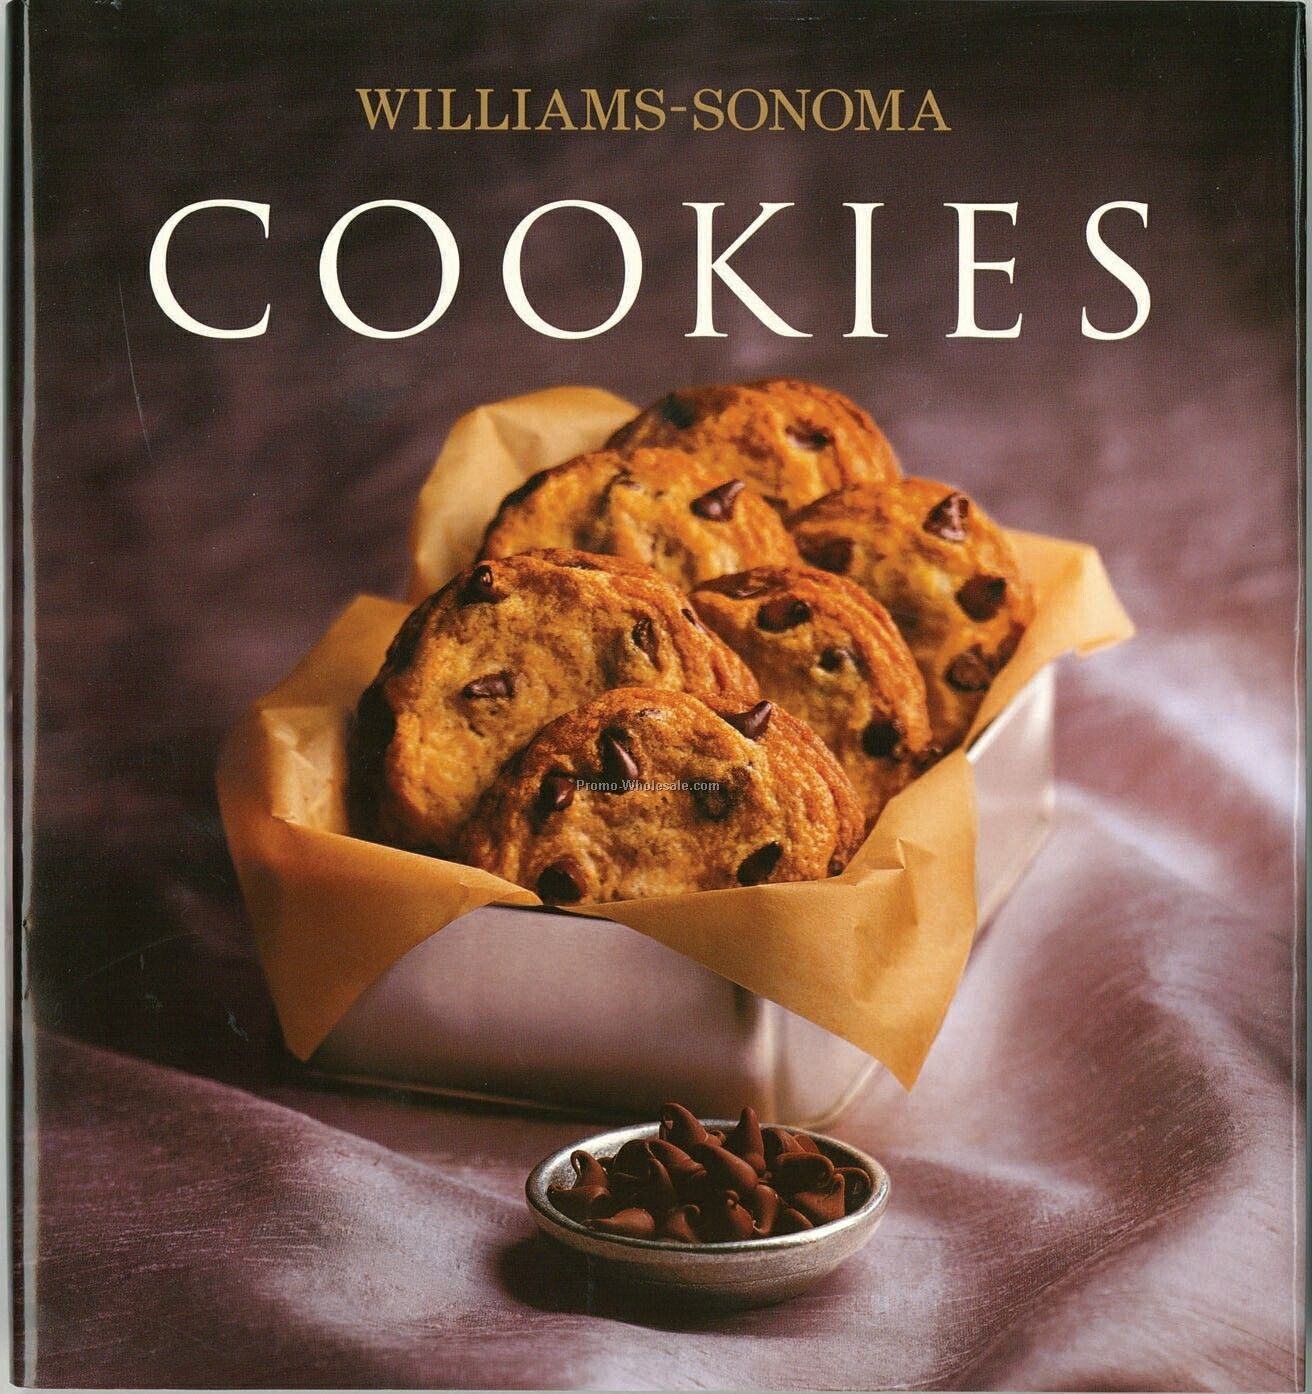 Williams-sonoma Cookies Cookbook